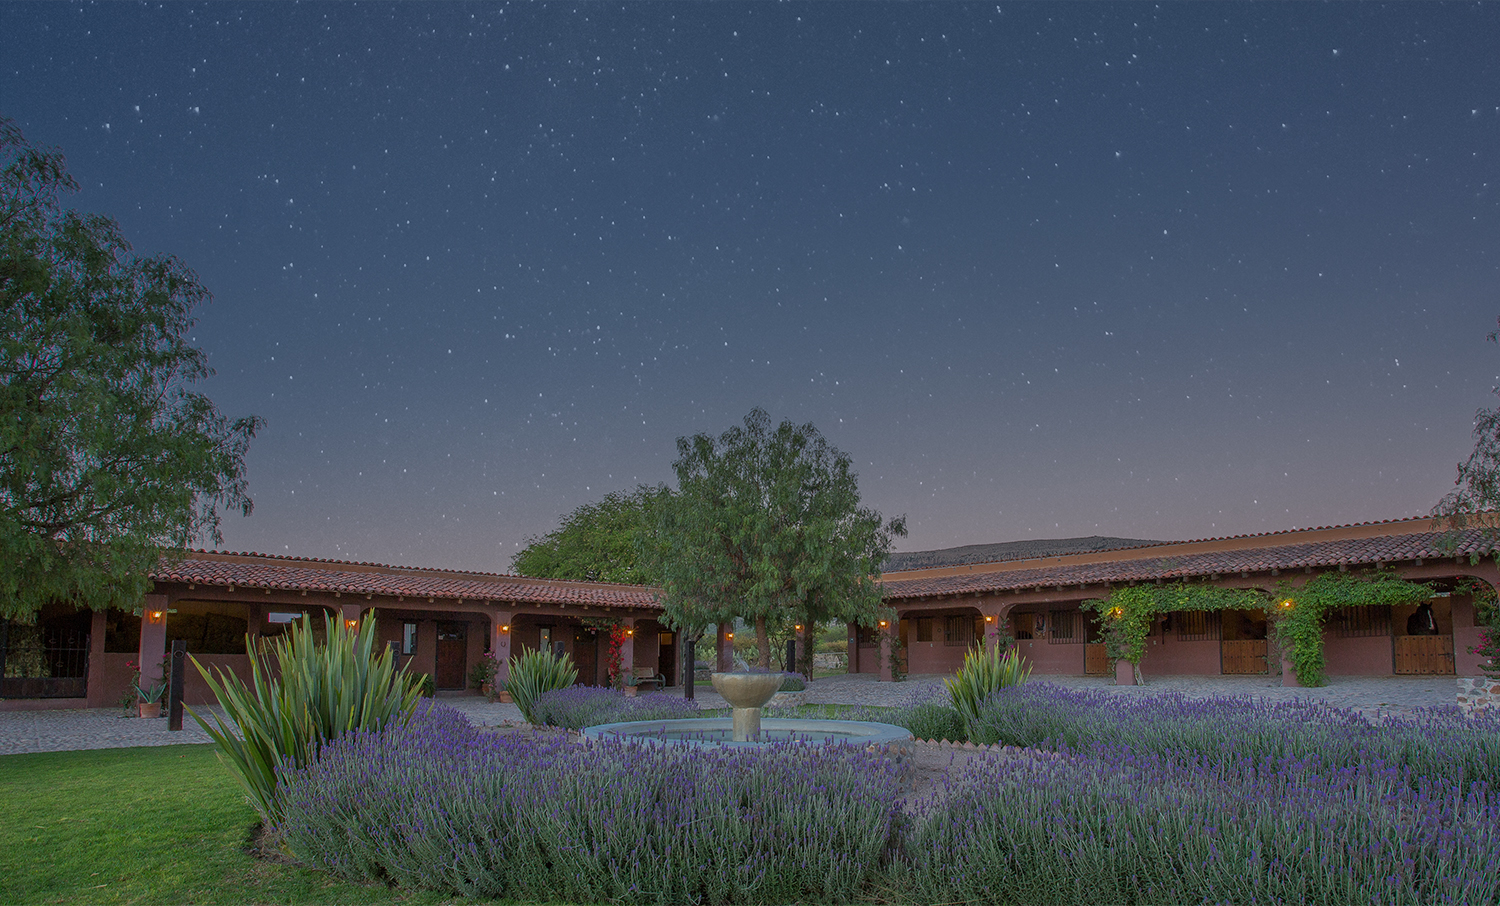 Starry night at Rancho Sol Dorado, Private Ranch Community and Club in San Miguel de Allende Mexico